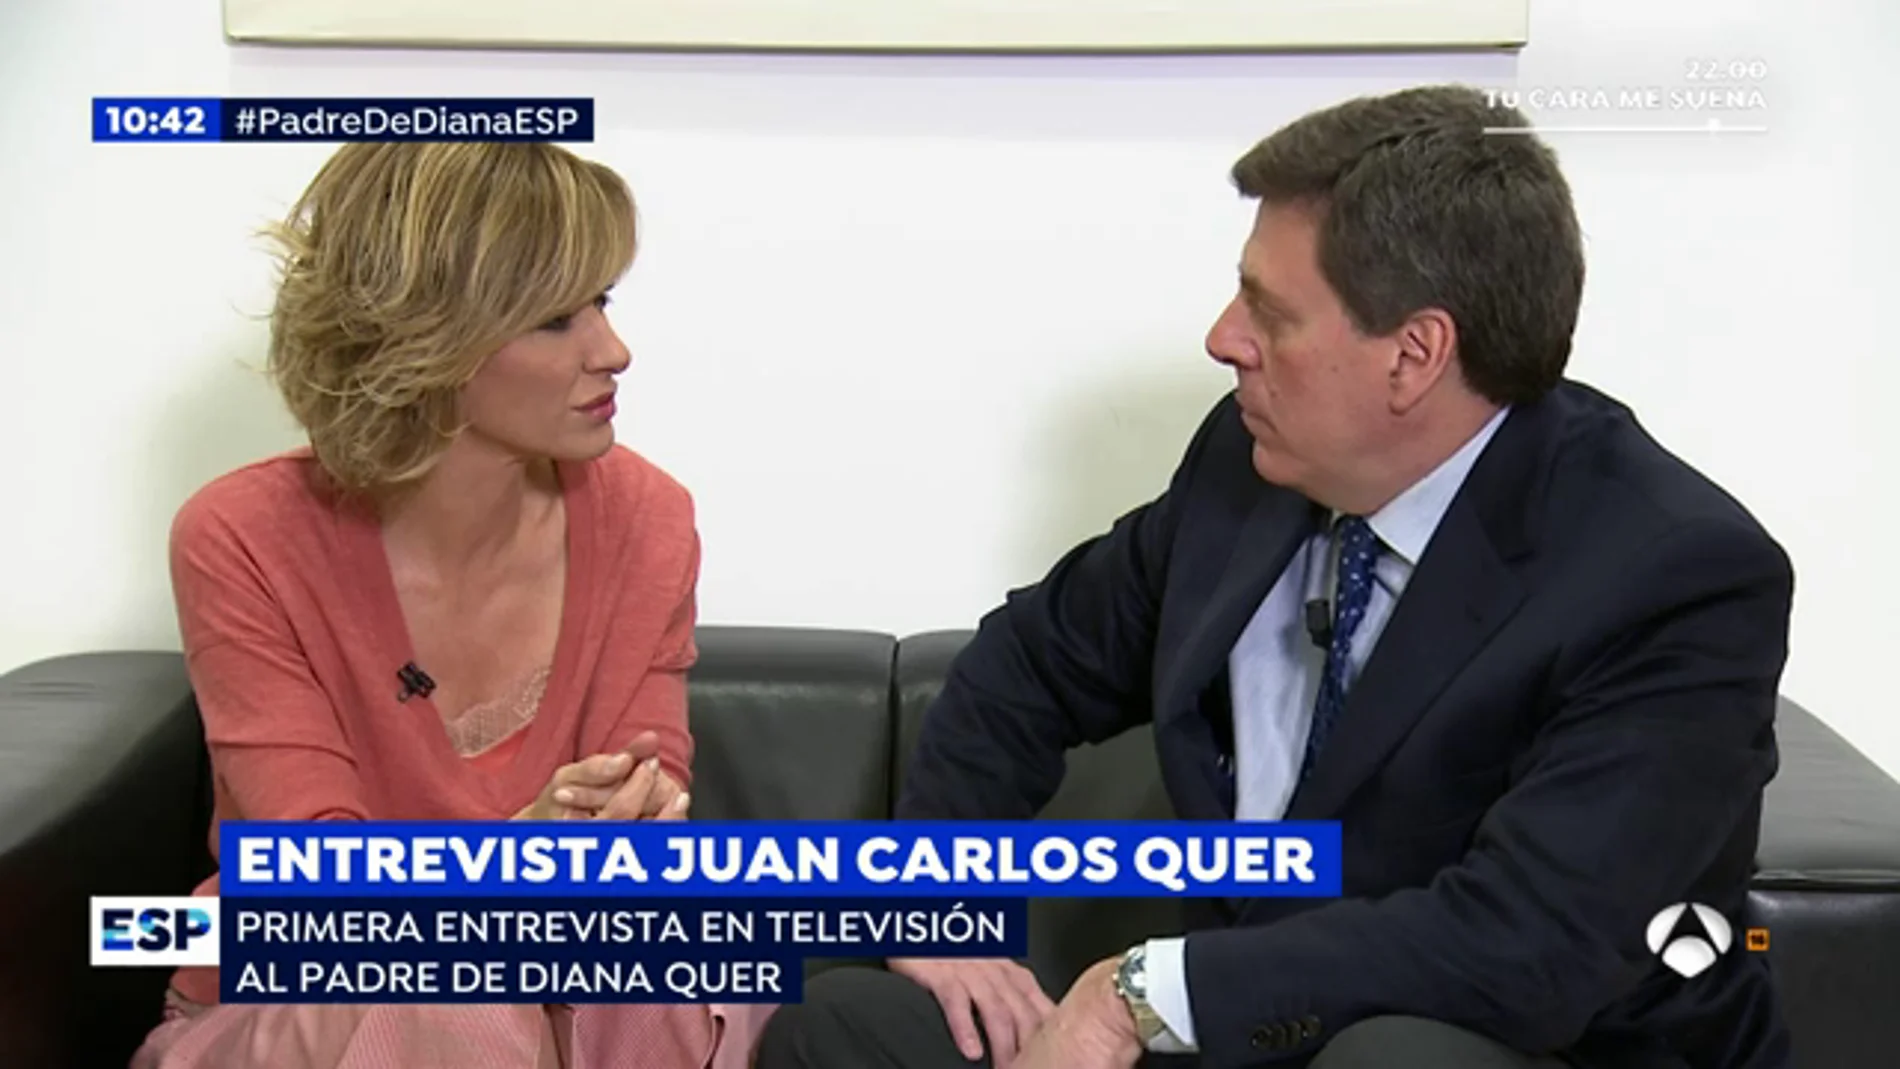 Juan Carlos Quer: "El momento mÃ¡s duro fue cuando fuimos a recoger el cuerpo de Diana al Instituto AnatÃ³mico Forense"